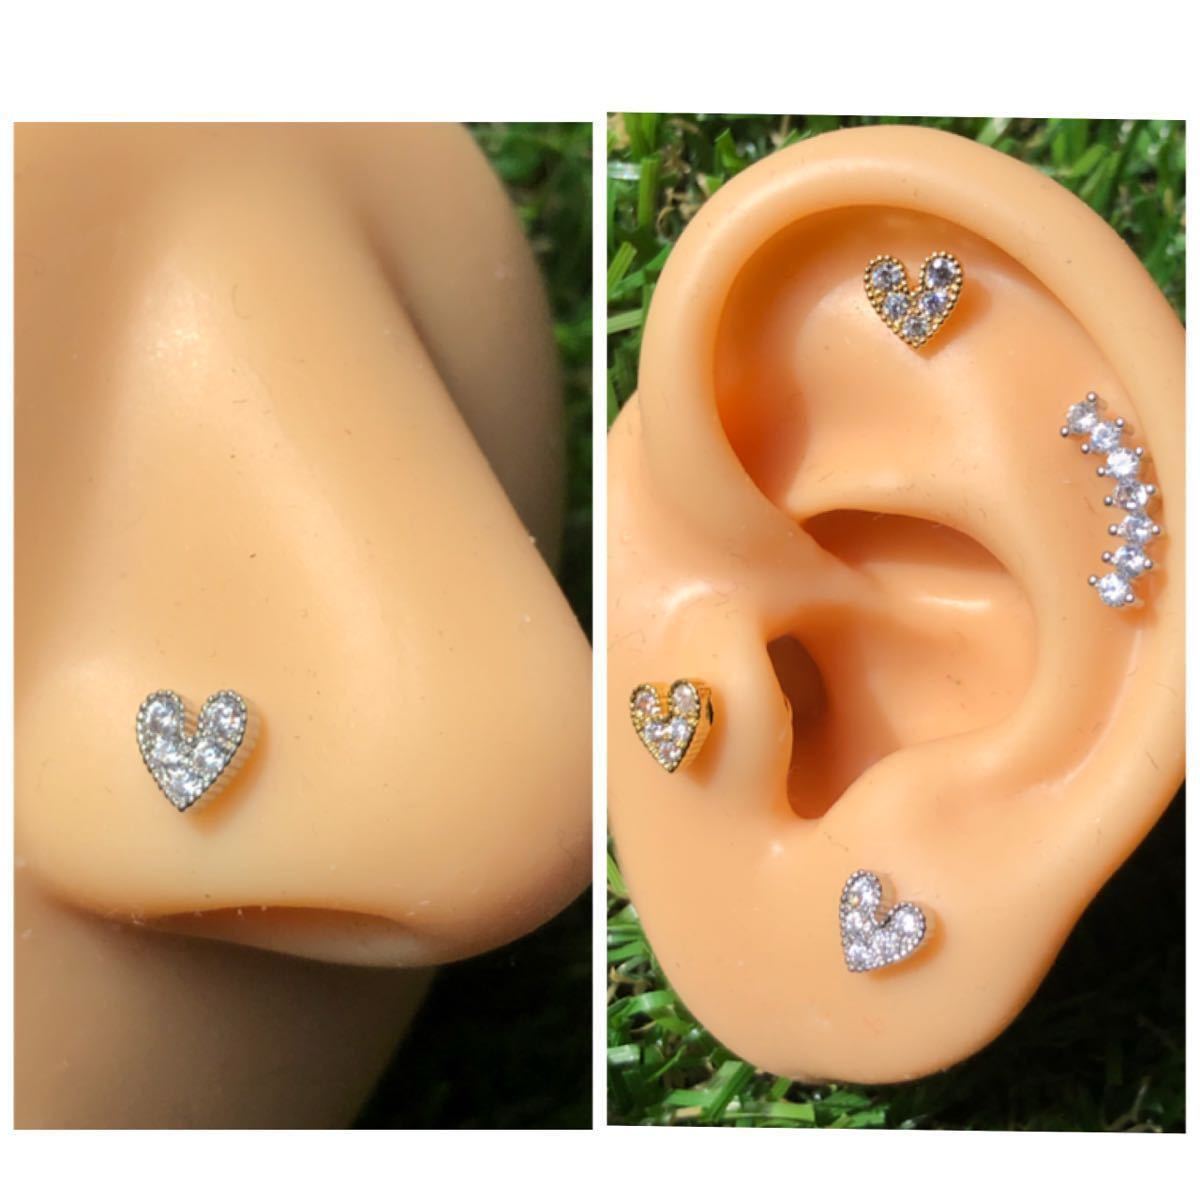 [ anonymity delivery ] body pierce 20G 1 piece la Brett stud heart motif brilliancy Cubic Zirconia silver ear .. First earrings 